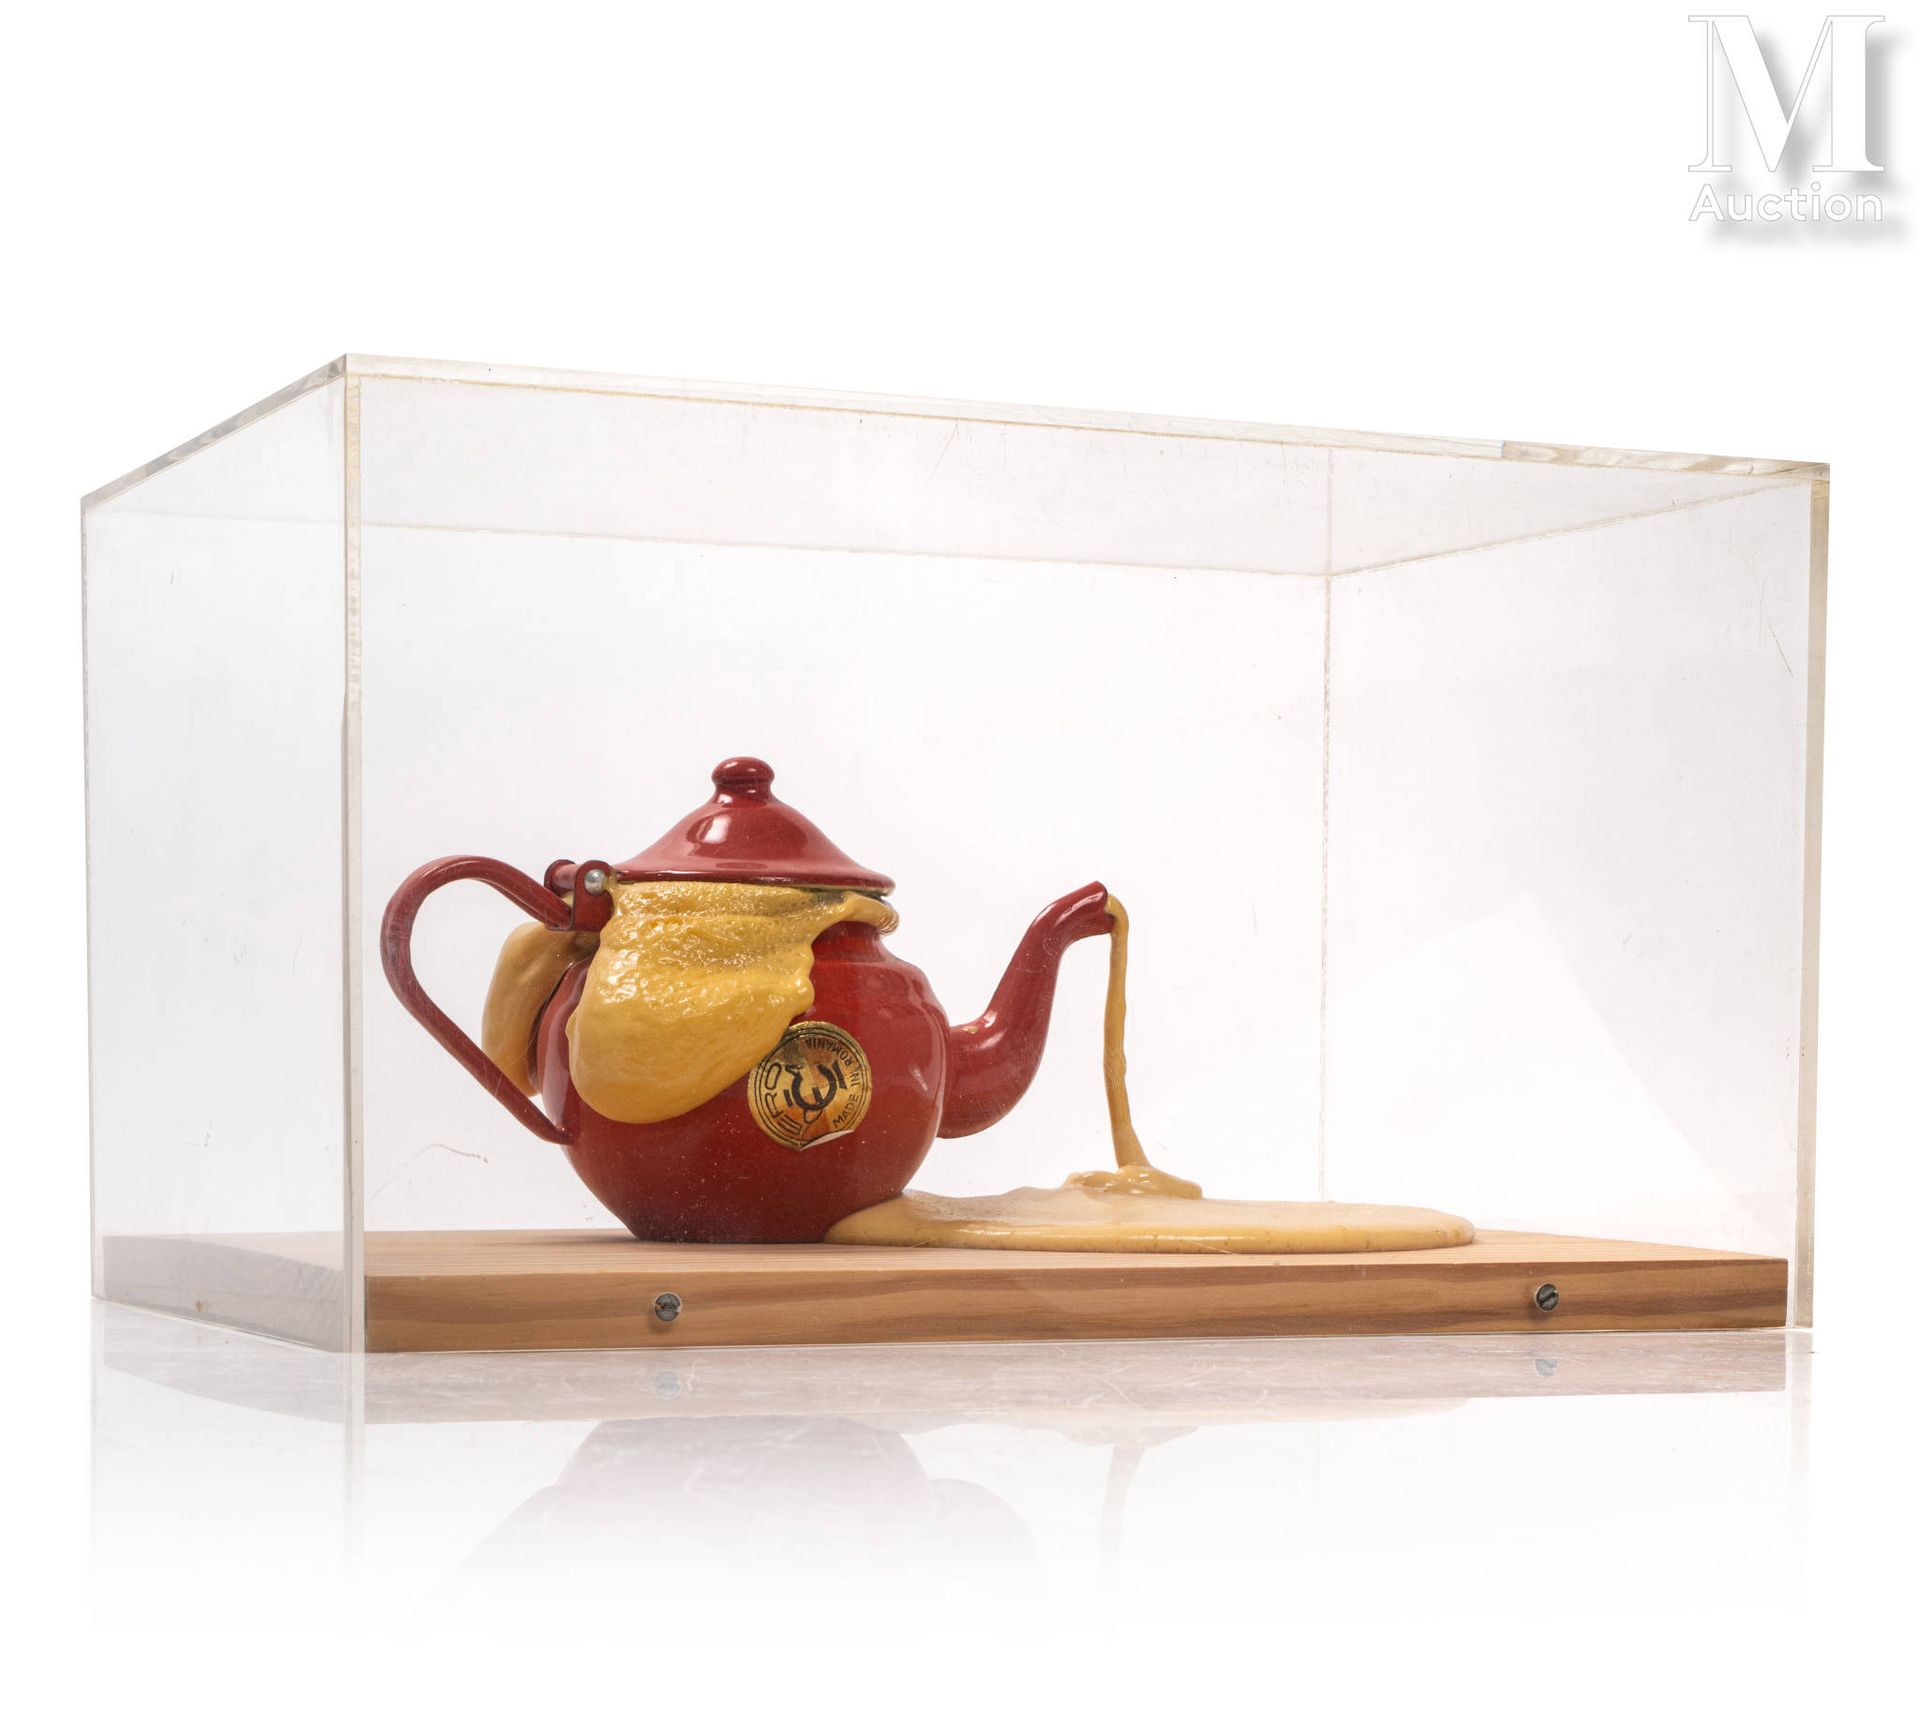 César (1921-1998) 扩建茶壶，1970年

金属茶壶和聚氨酯膨胀物装在有机玻璃盒里，有签名的雕塑，来自30个版本。群岛版

20 x 36 x &hellip;